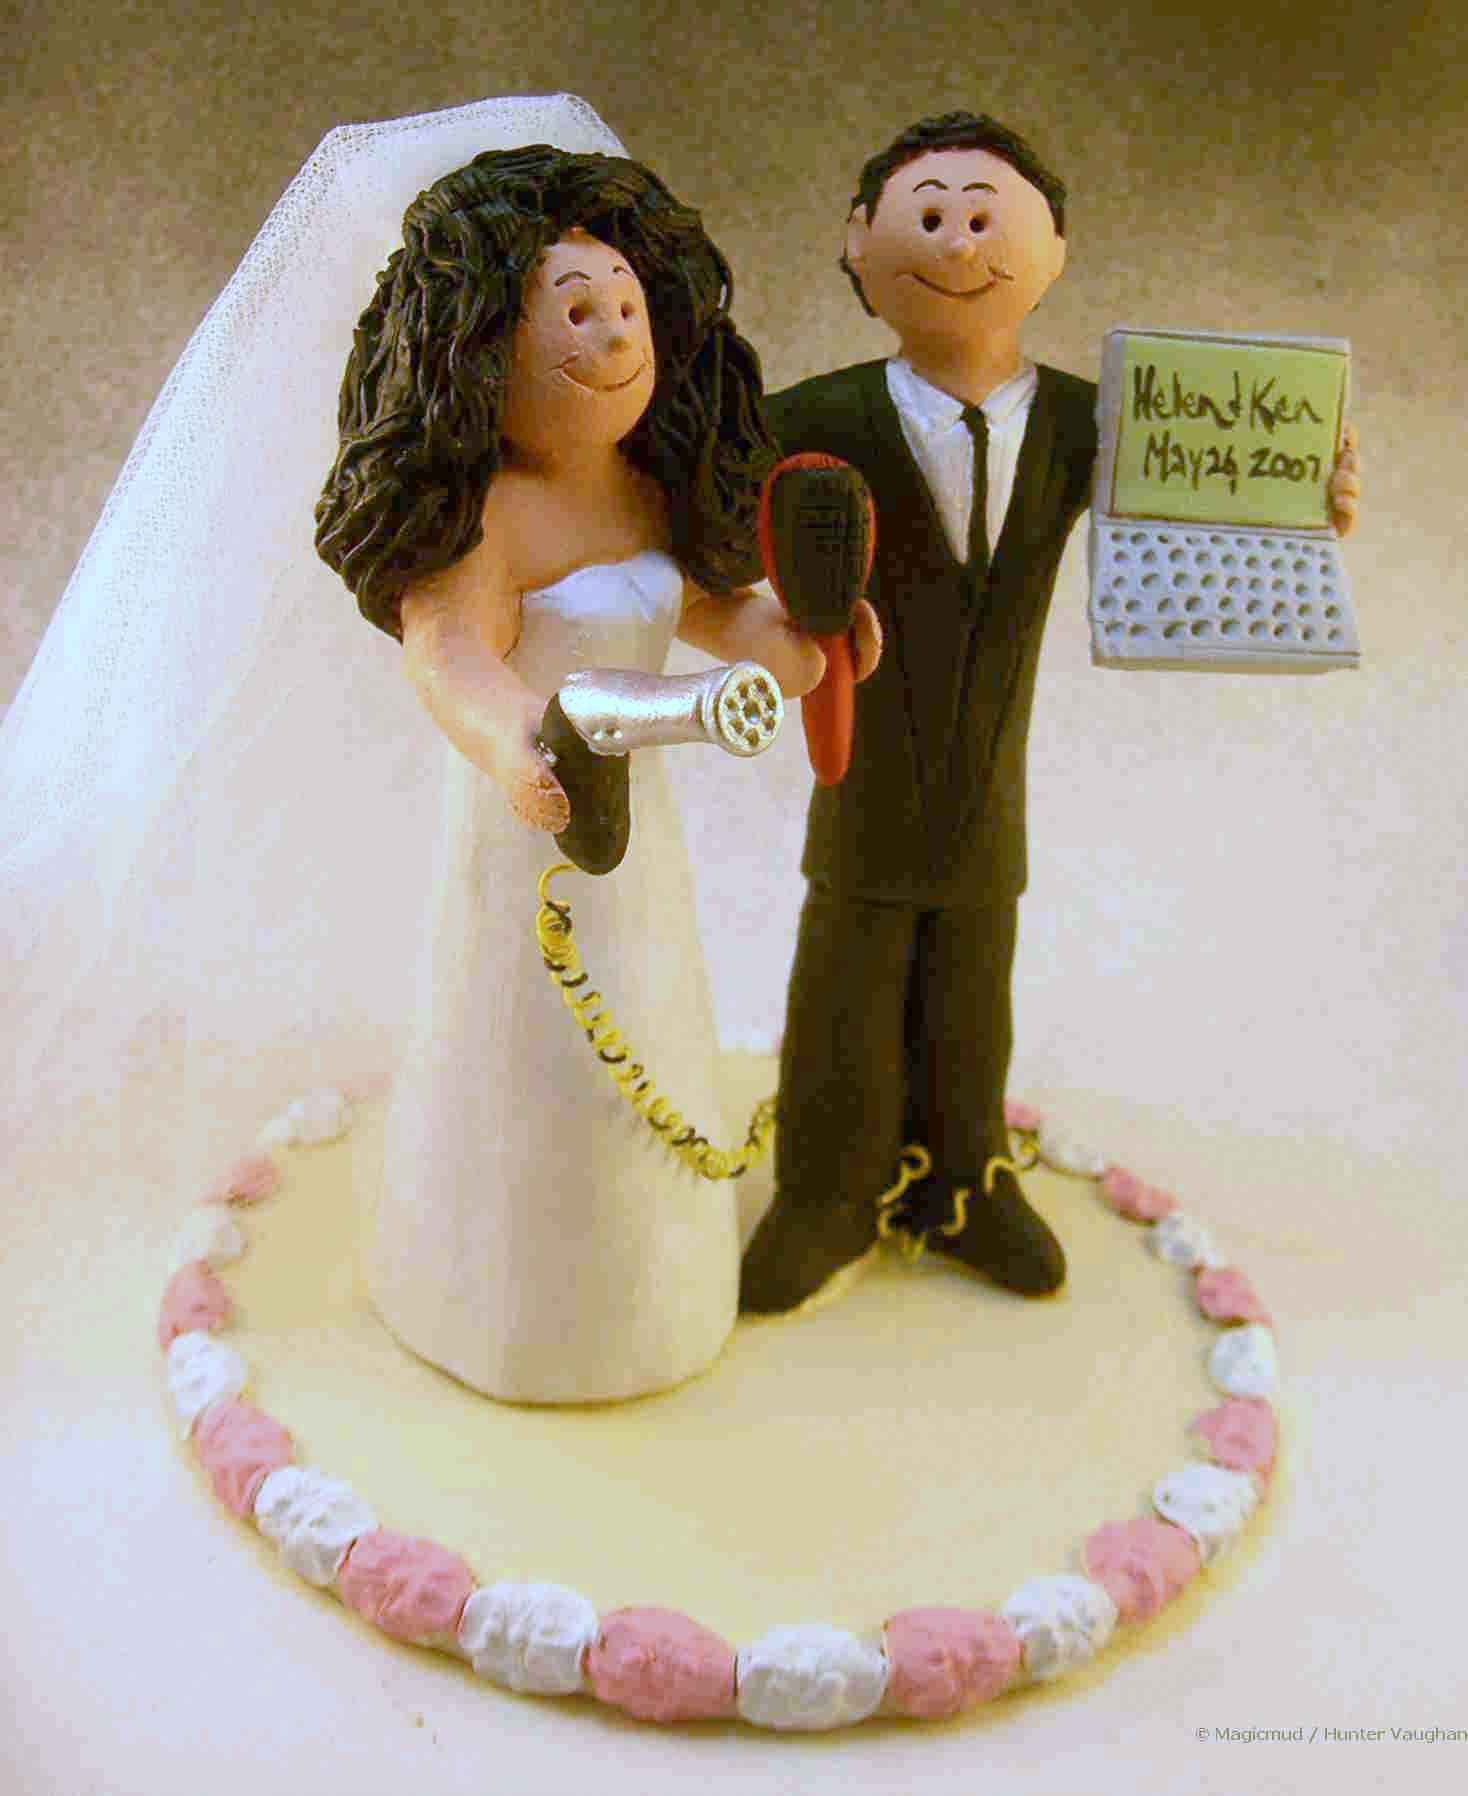 Hairdresser's Wedding Cake Topper